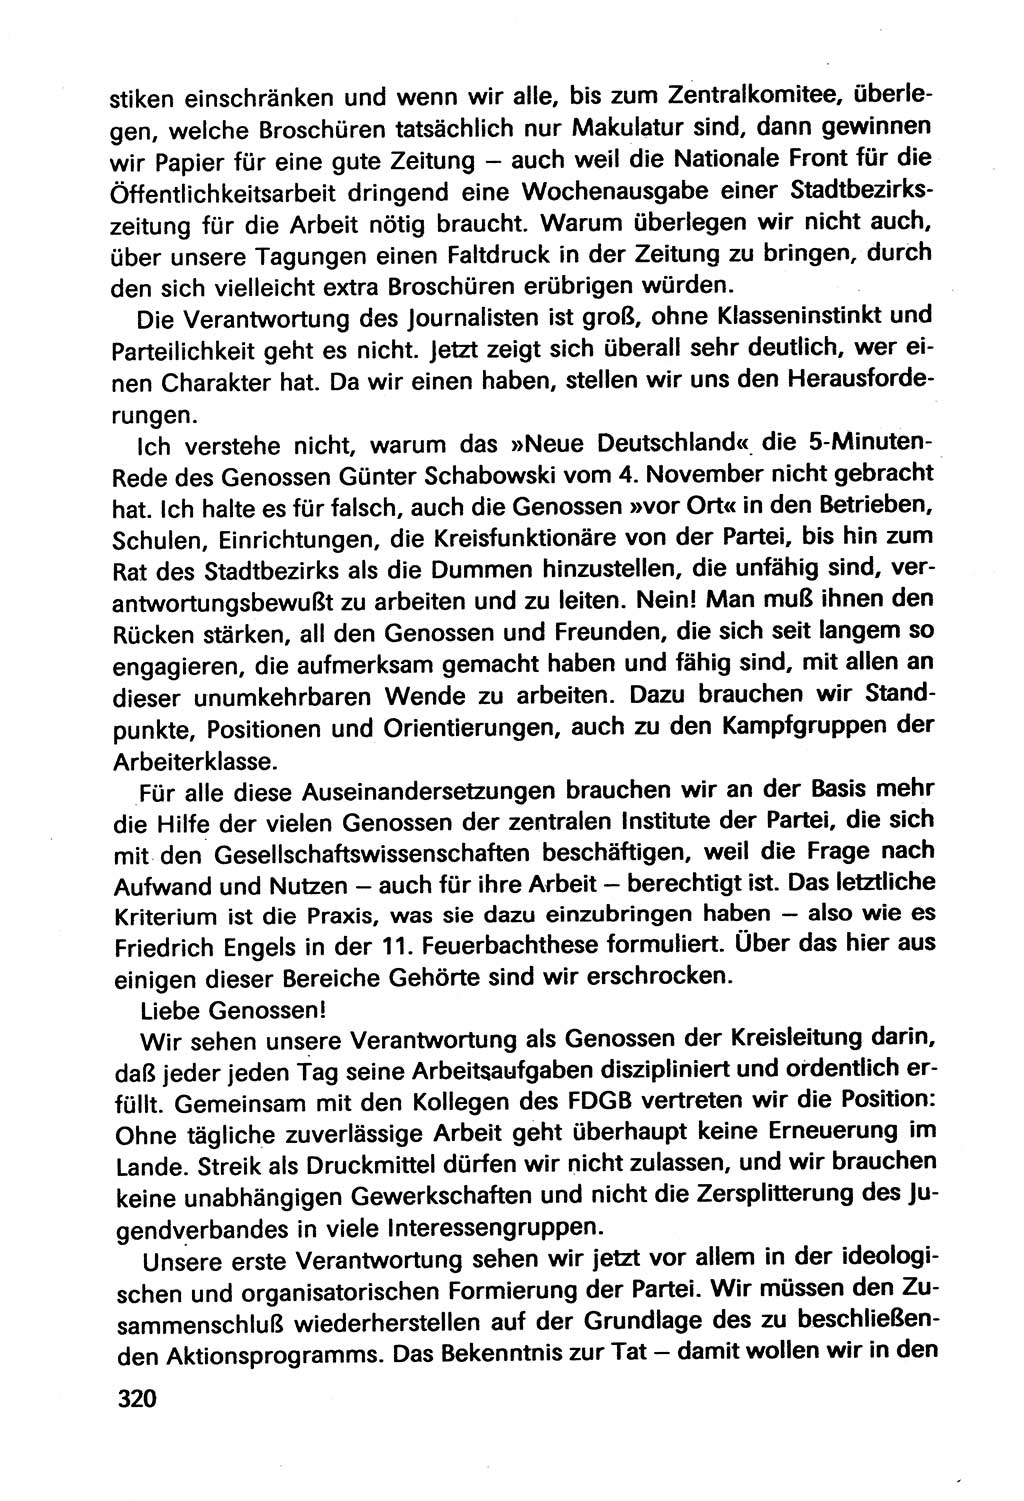 Diskussionsbeiträge, 10. Tagung des ZK (Zentralkomitee) der SED (Sozialistische Einheitspartei Deutschlands) [Deutsche Demokratische Republik (DDR)] 1989, Seite 320 (Disk.-Beitr. 10. Tg. ZK SED DDR 1989, S. 320)